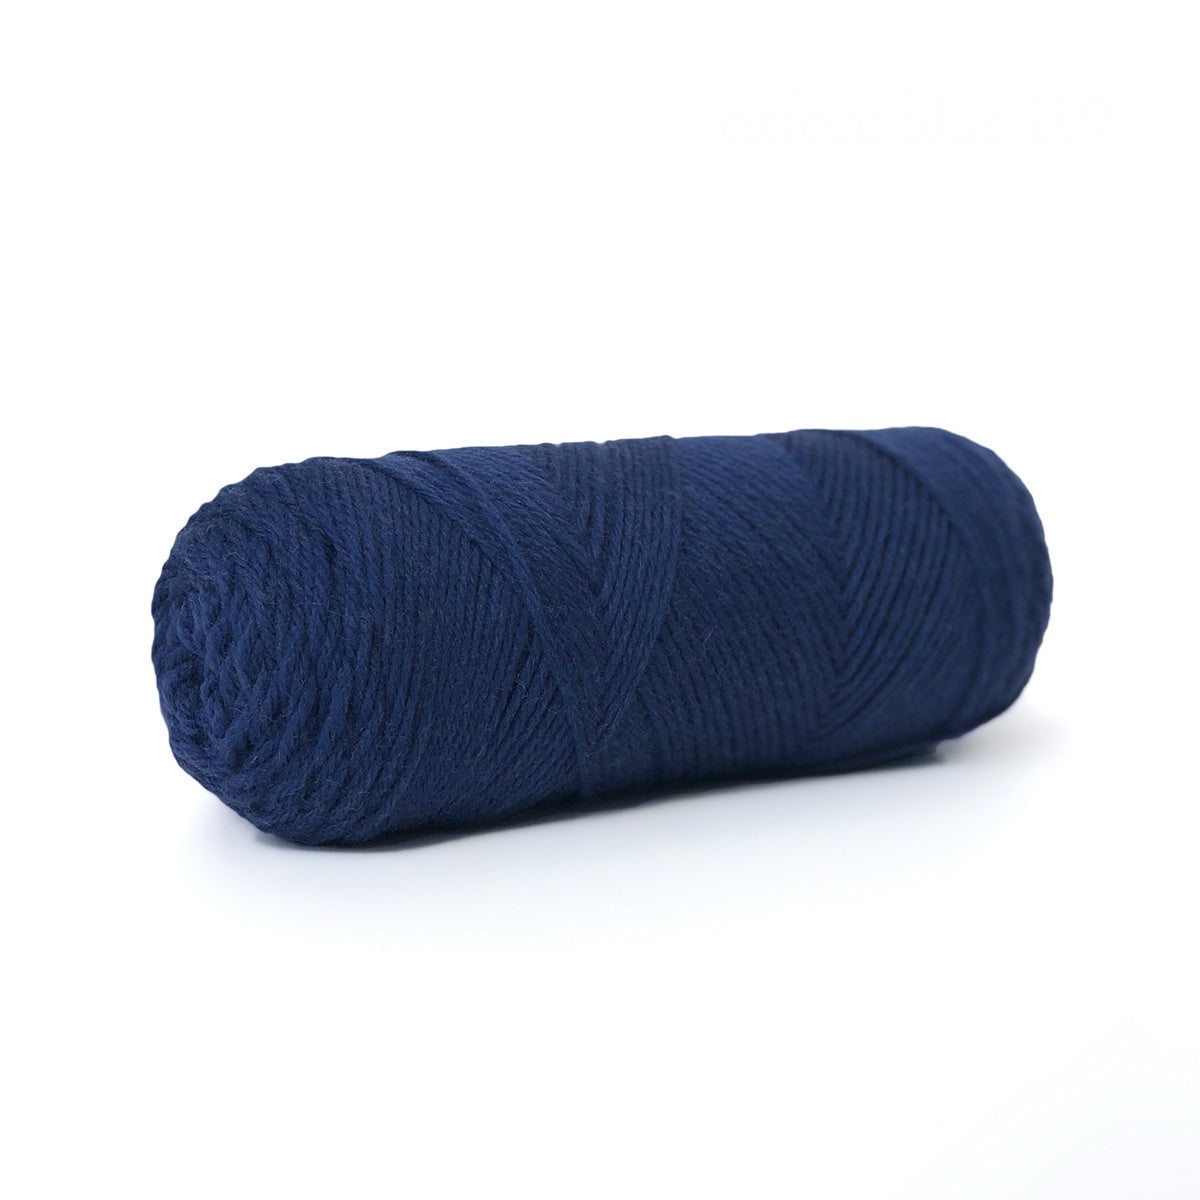 Sille Slipover Kit, Size 2-5 (Oxford Blue)